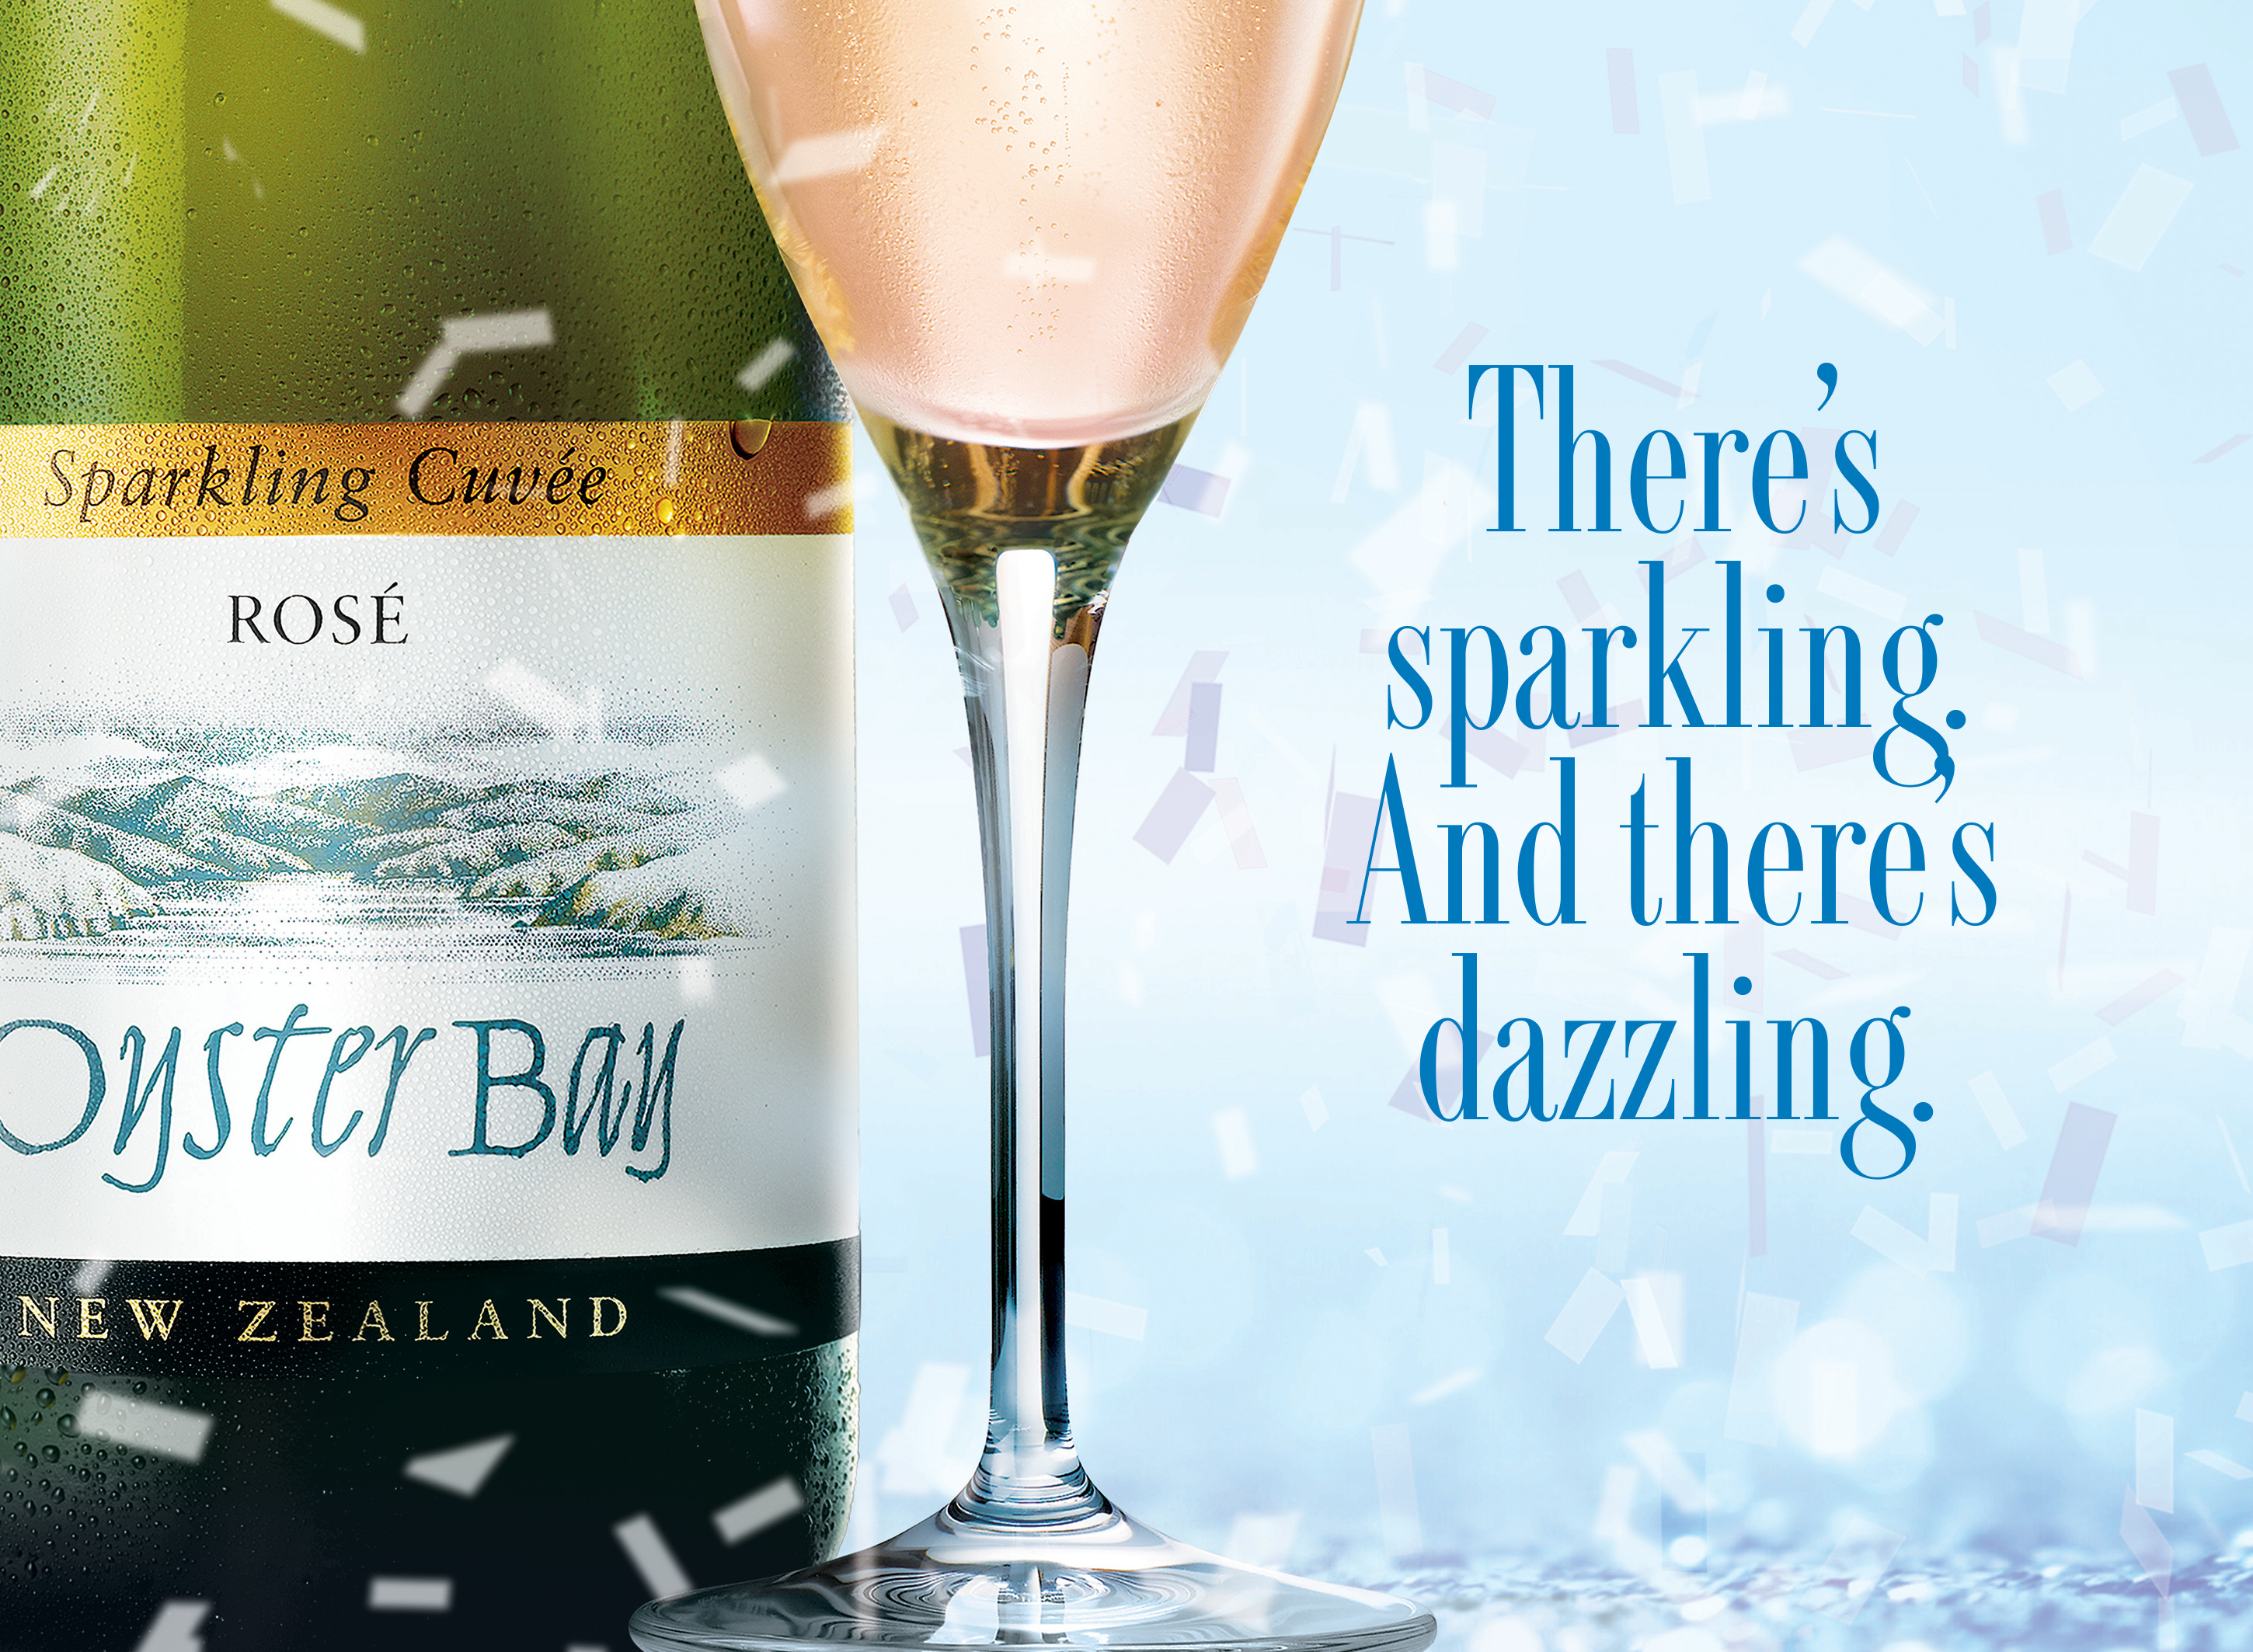 oyster bay sparkling cuvee rose bottle glass tagline